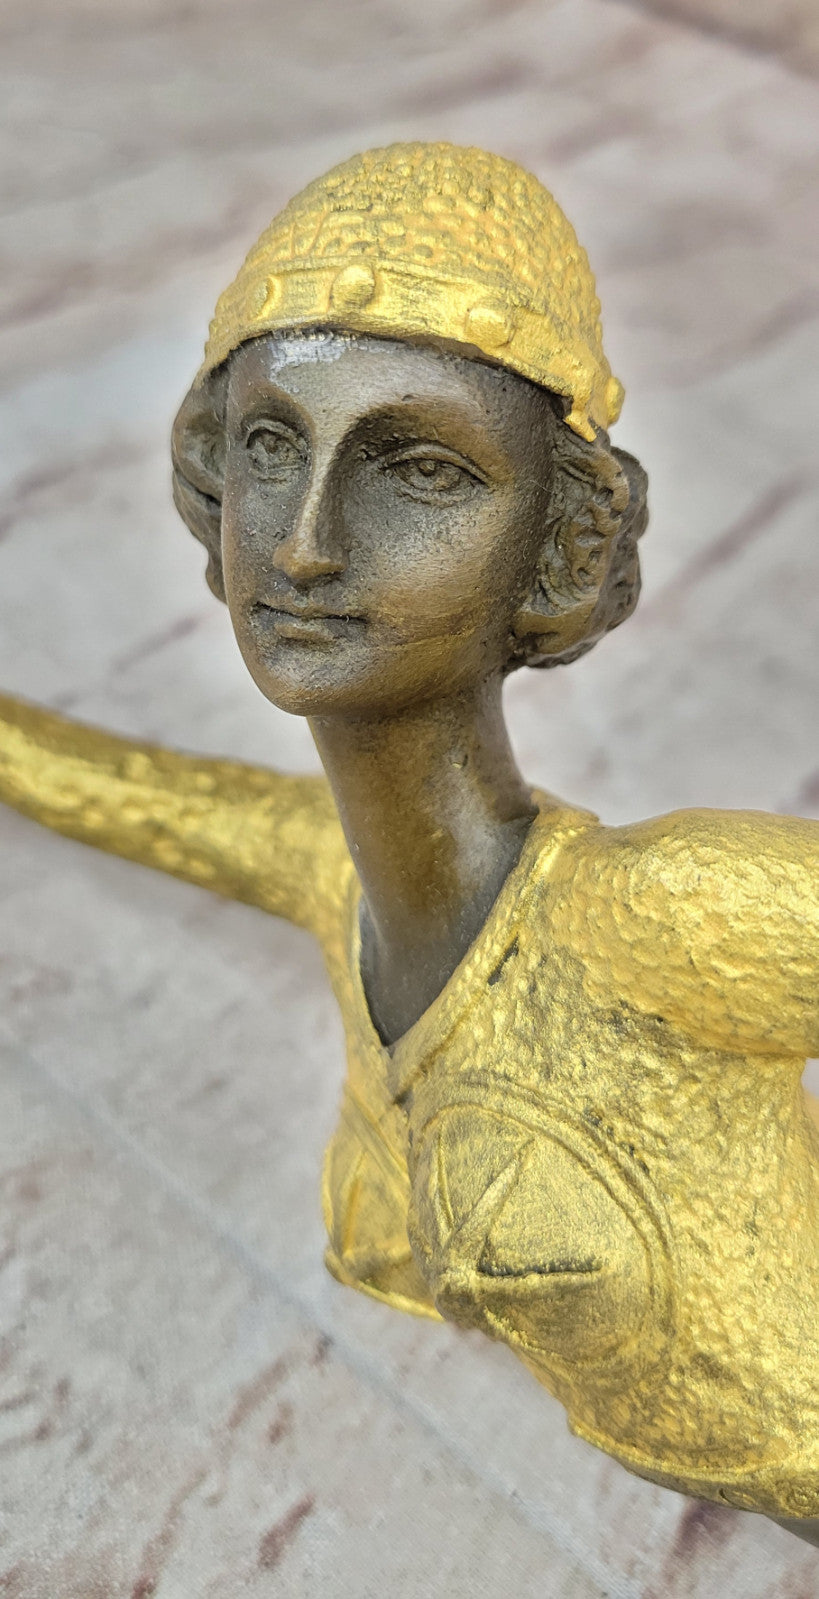 Handmade Egyptian Dancer Bronze Sculpture by Demetre Chiparus: Art Deco Statue